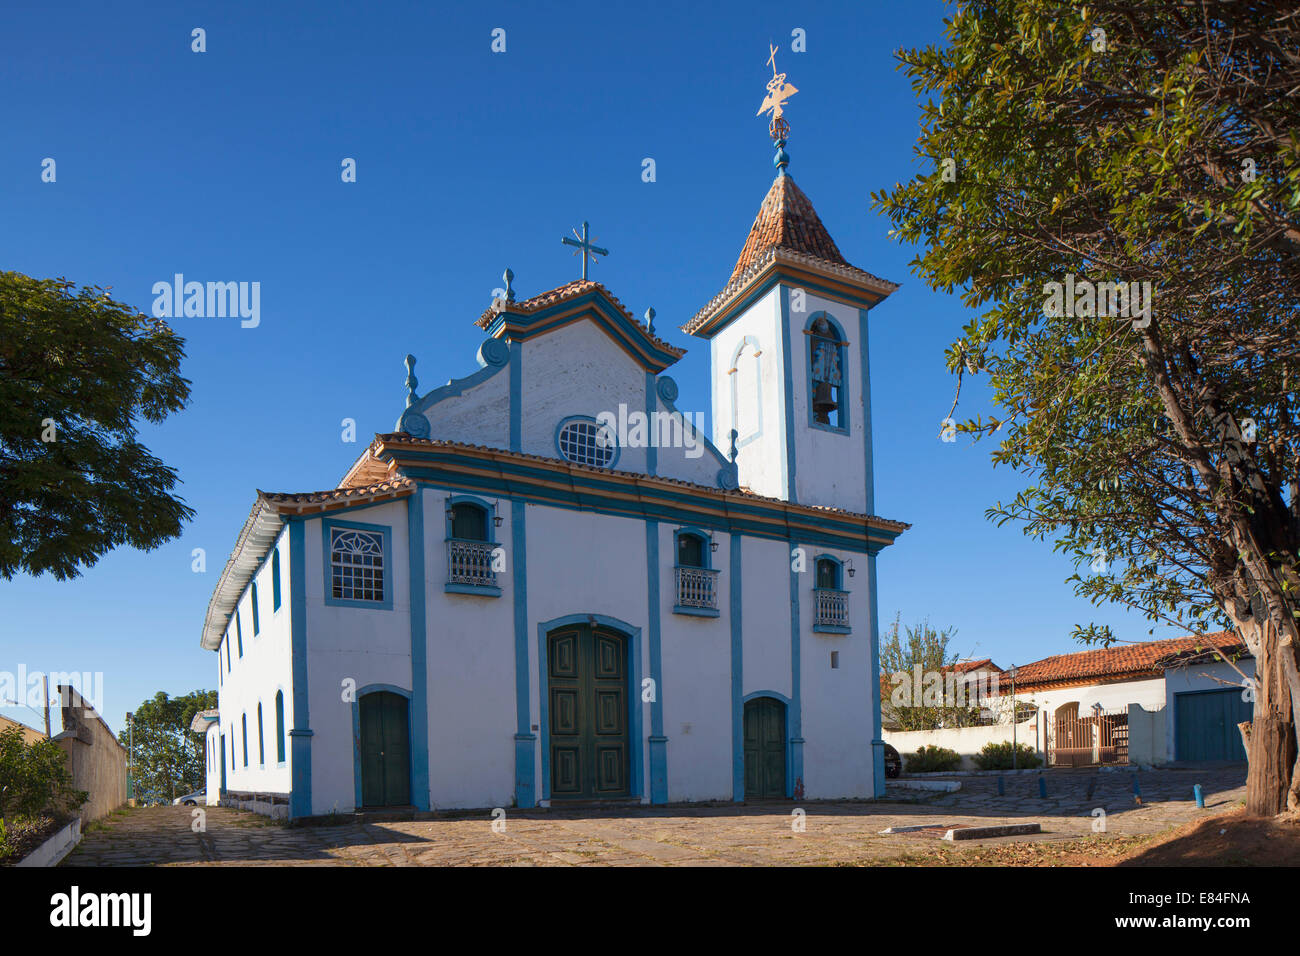 Church of Nossa Senhora do Rosario dos Pretos, Diamantina (UNESCO World Heritage Site), Minas Gerais, Brazil Stock Photo